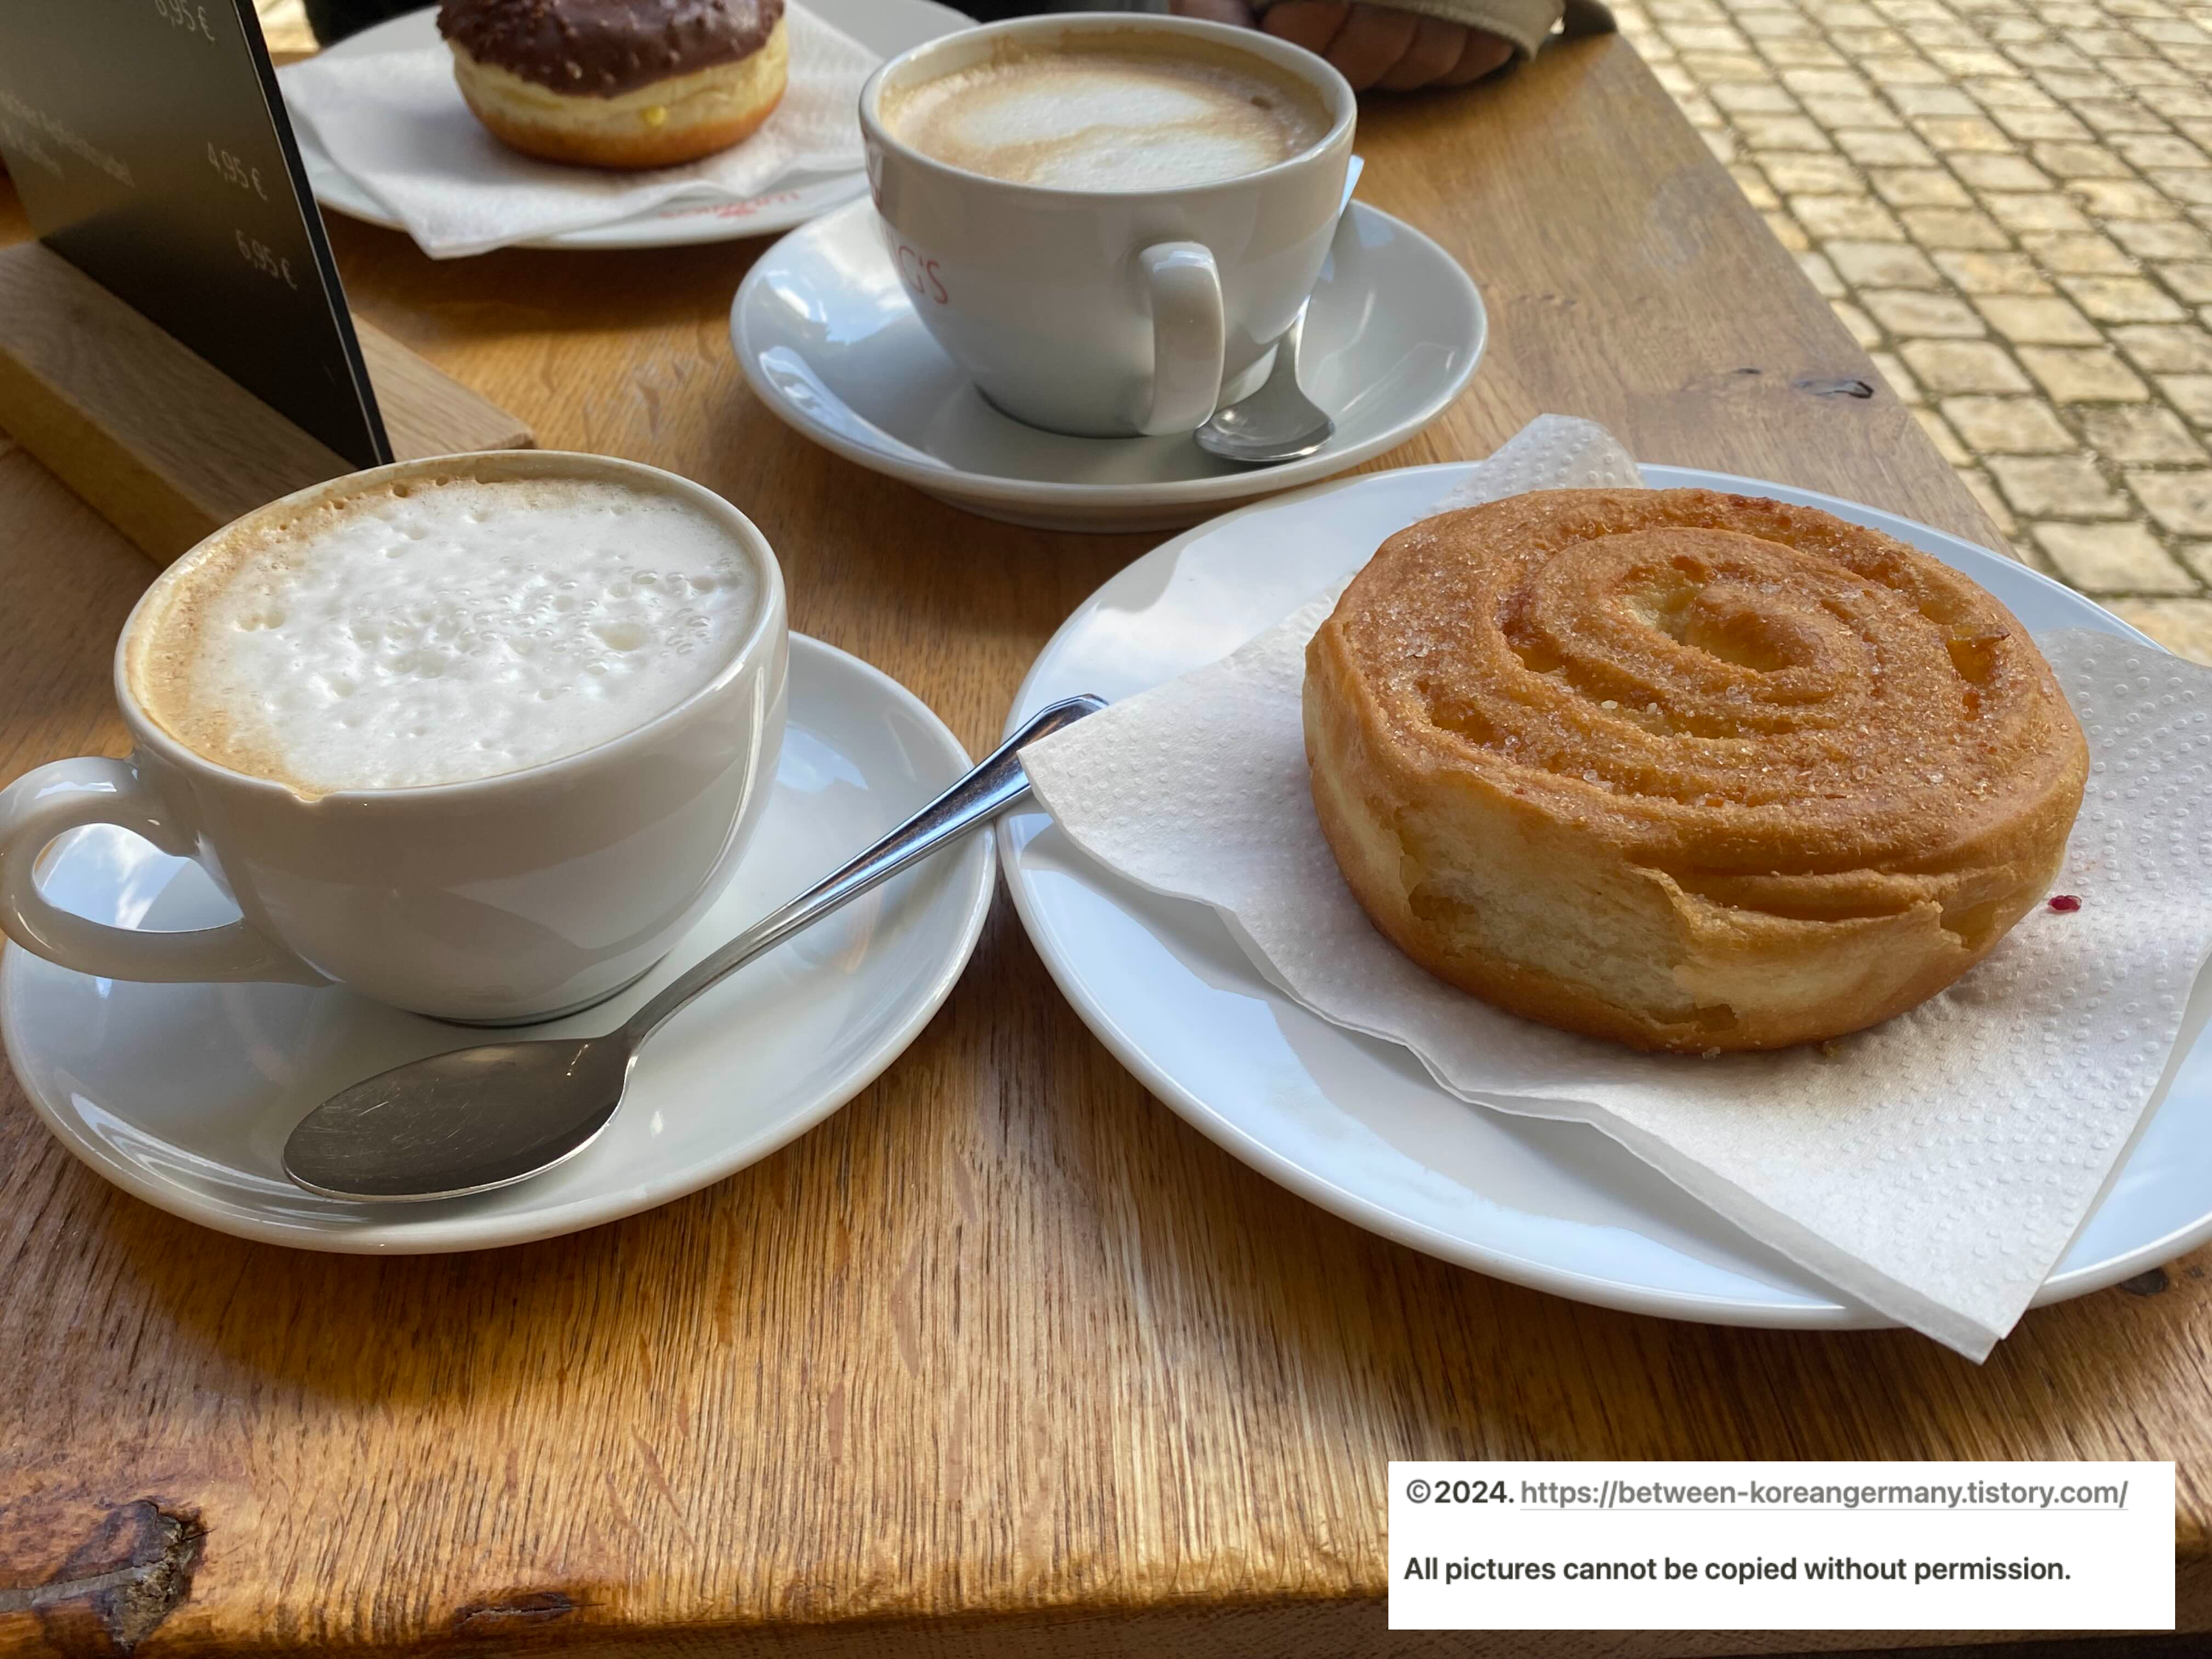 흰색 커피잔에 담겨있는 두 잔의 카푸치노와 그 옆에 놓인 설탕이 뿌려진 도넛&#44; 그리고 초콜렛이 입혀진 도넛